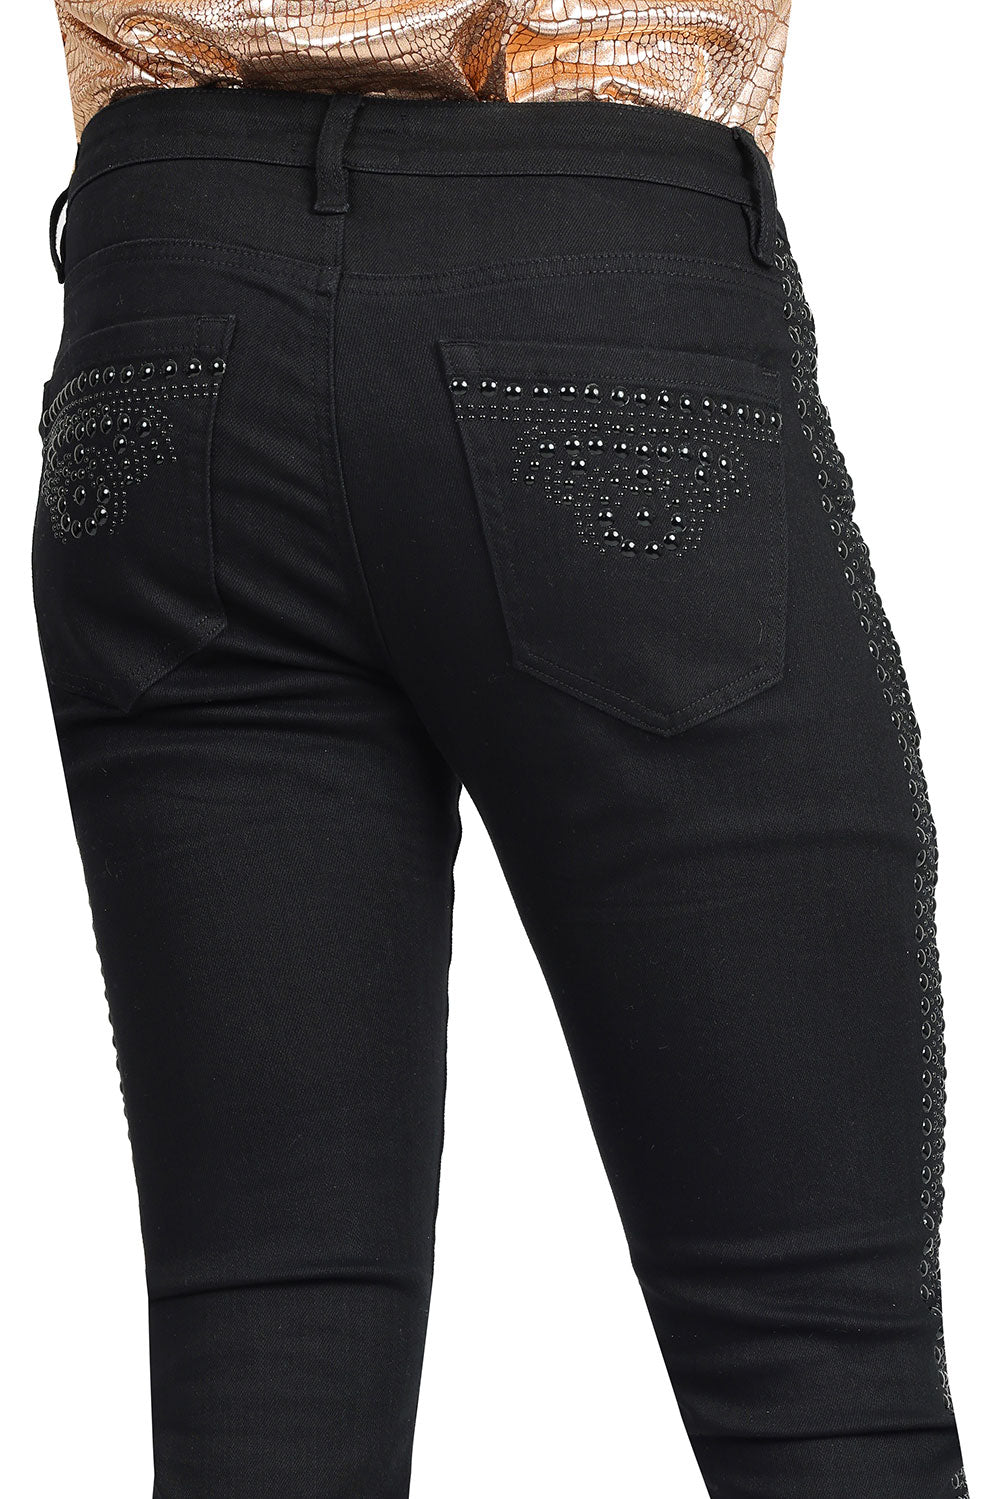 BARABAS Men's Jeans Stretch Beaded studded Slim Fit Denim Jeans 2JER22Black and Black